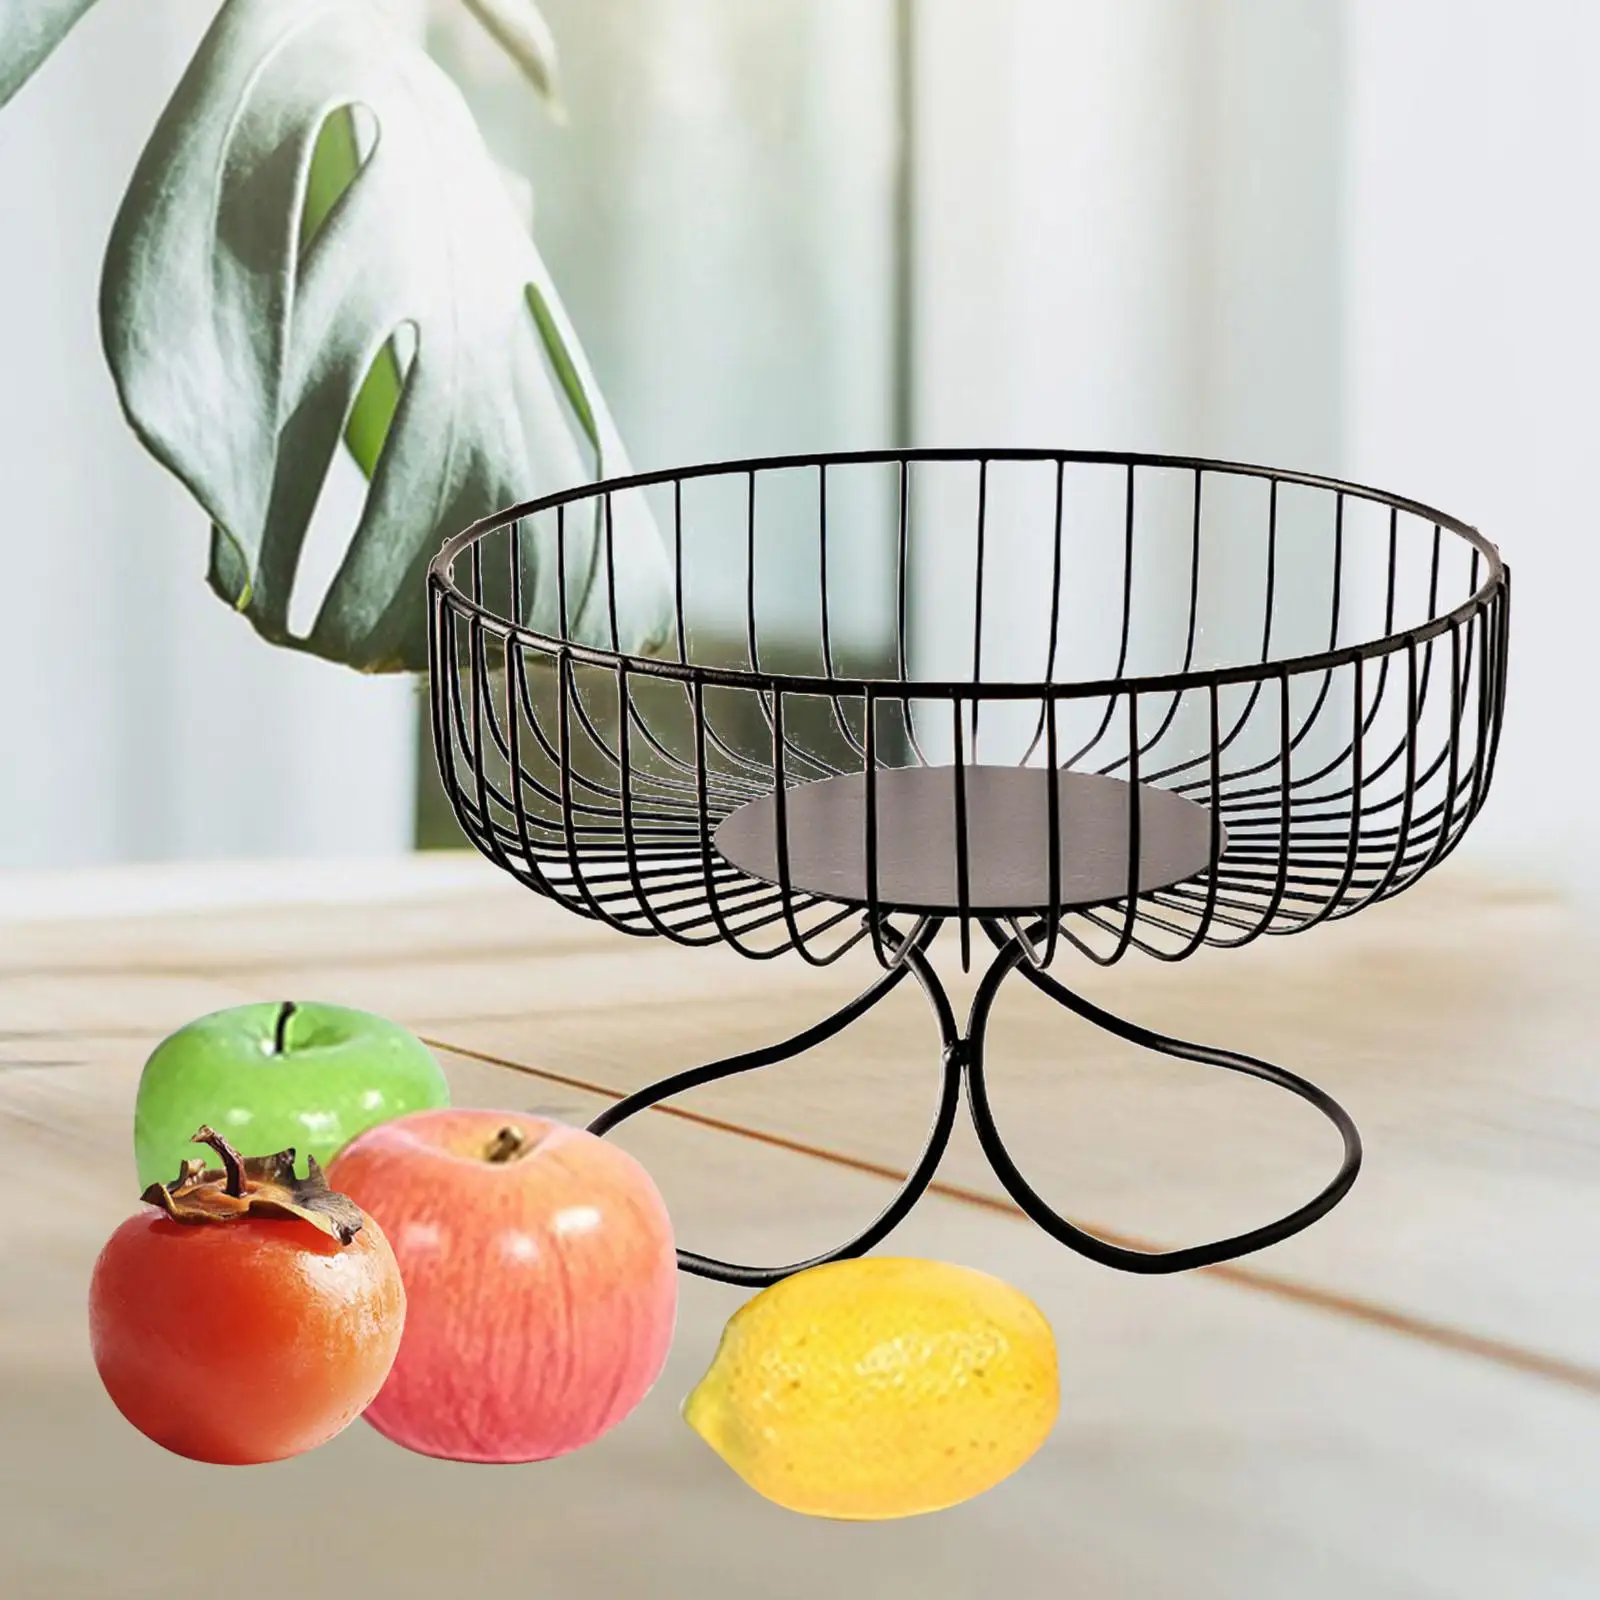 Modern Fruit Basket Snack Basket Portable Display Basket Home Storage Countertop Fruit Bowl Basket Holder for Kitchen Gadgets